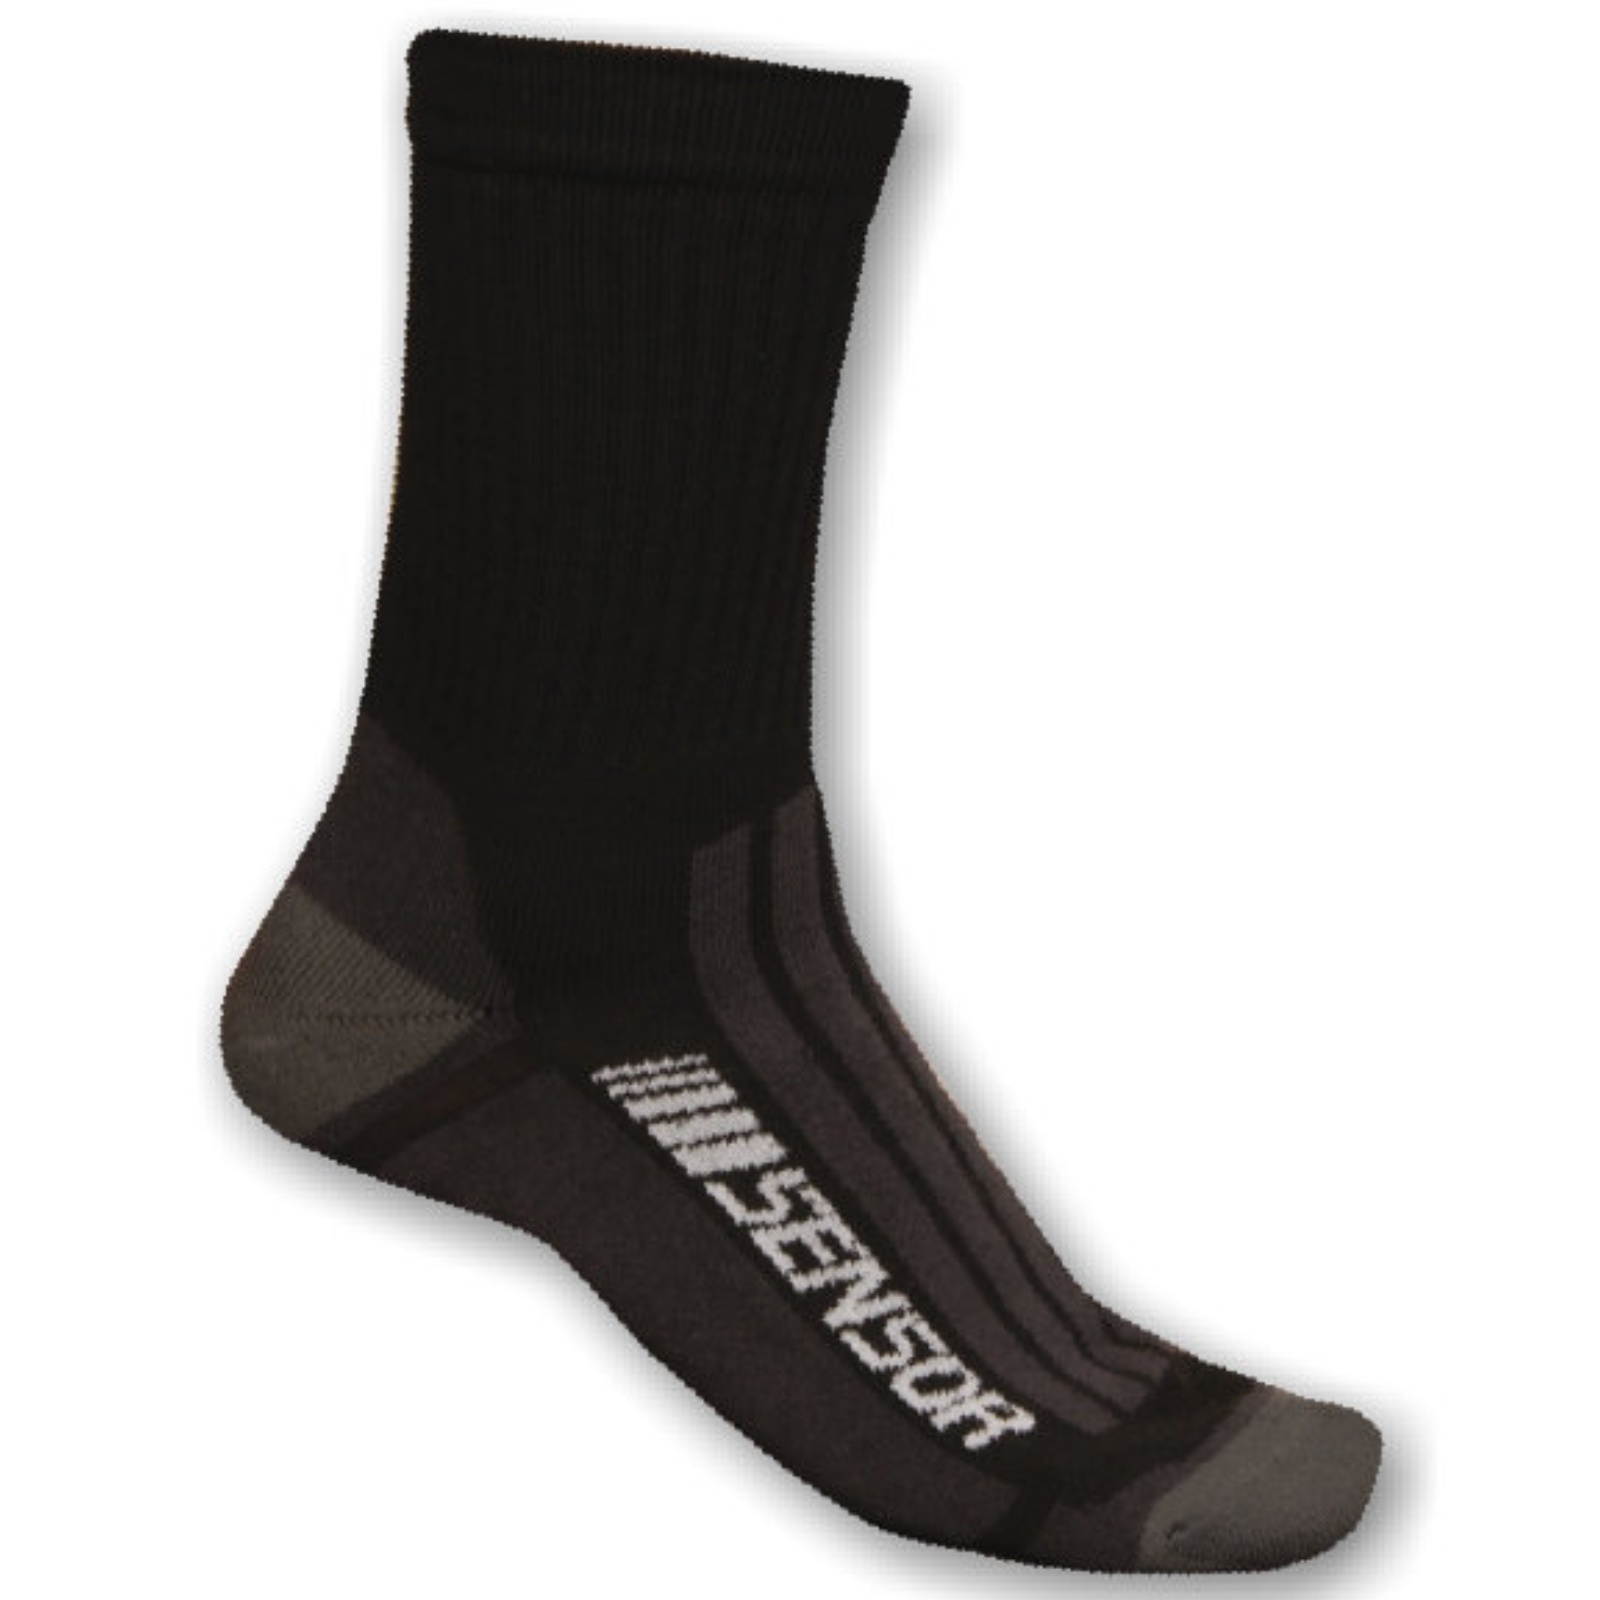 Ponožky SENSOR Treking Merino černo-šedé - vel. 9-11